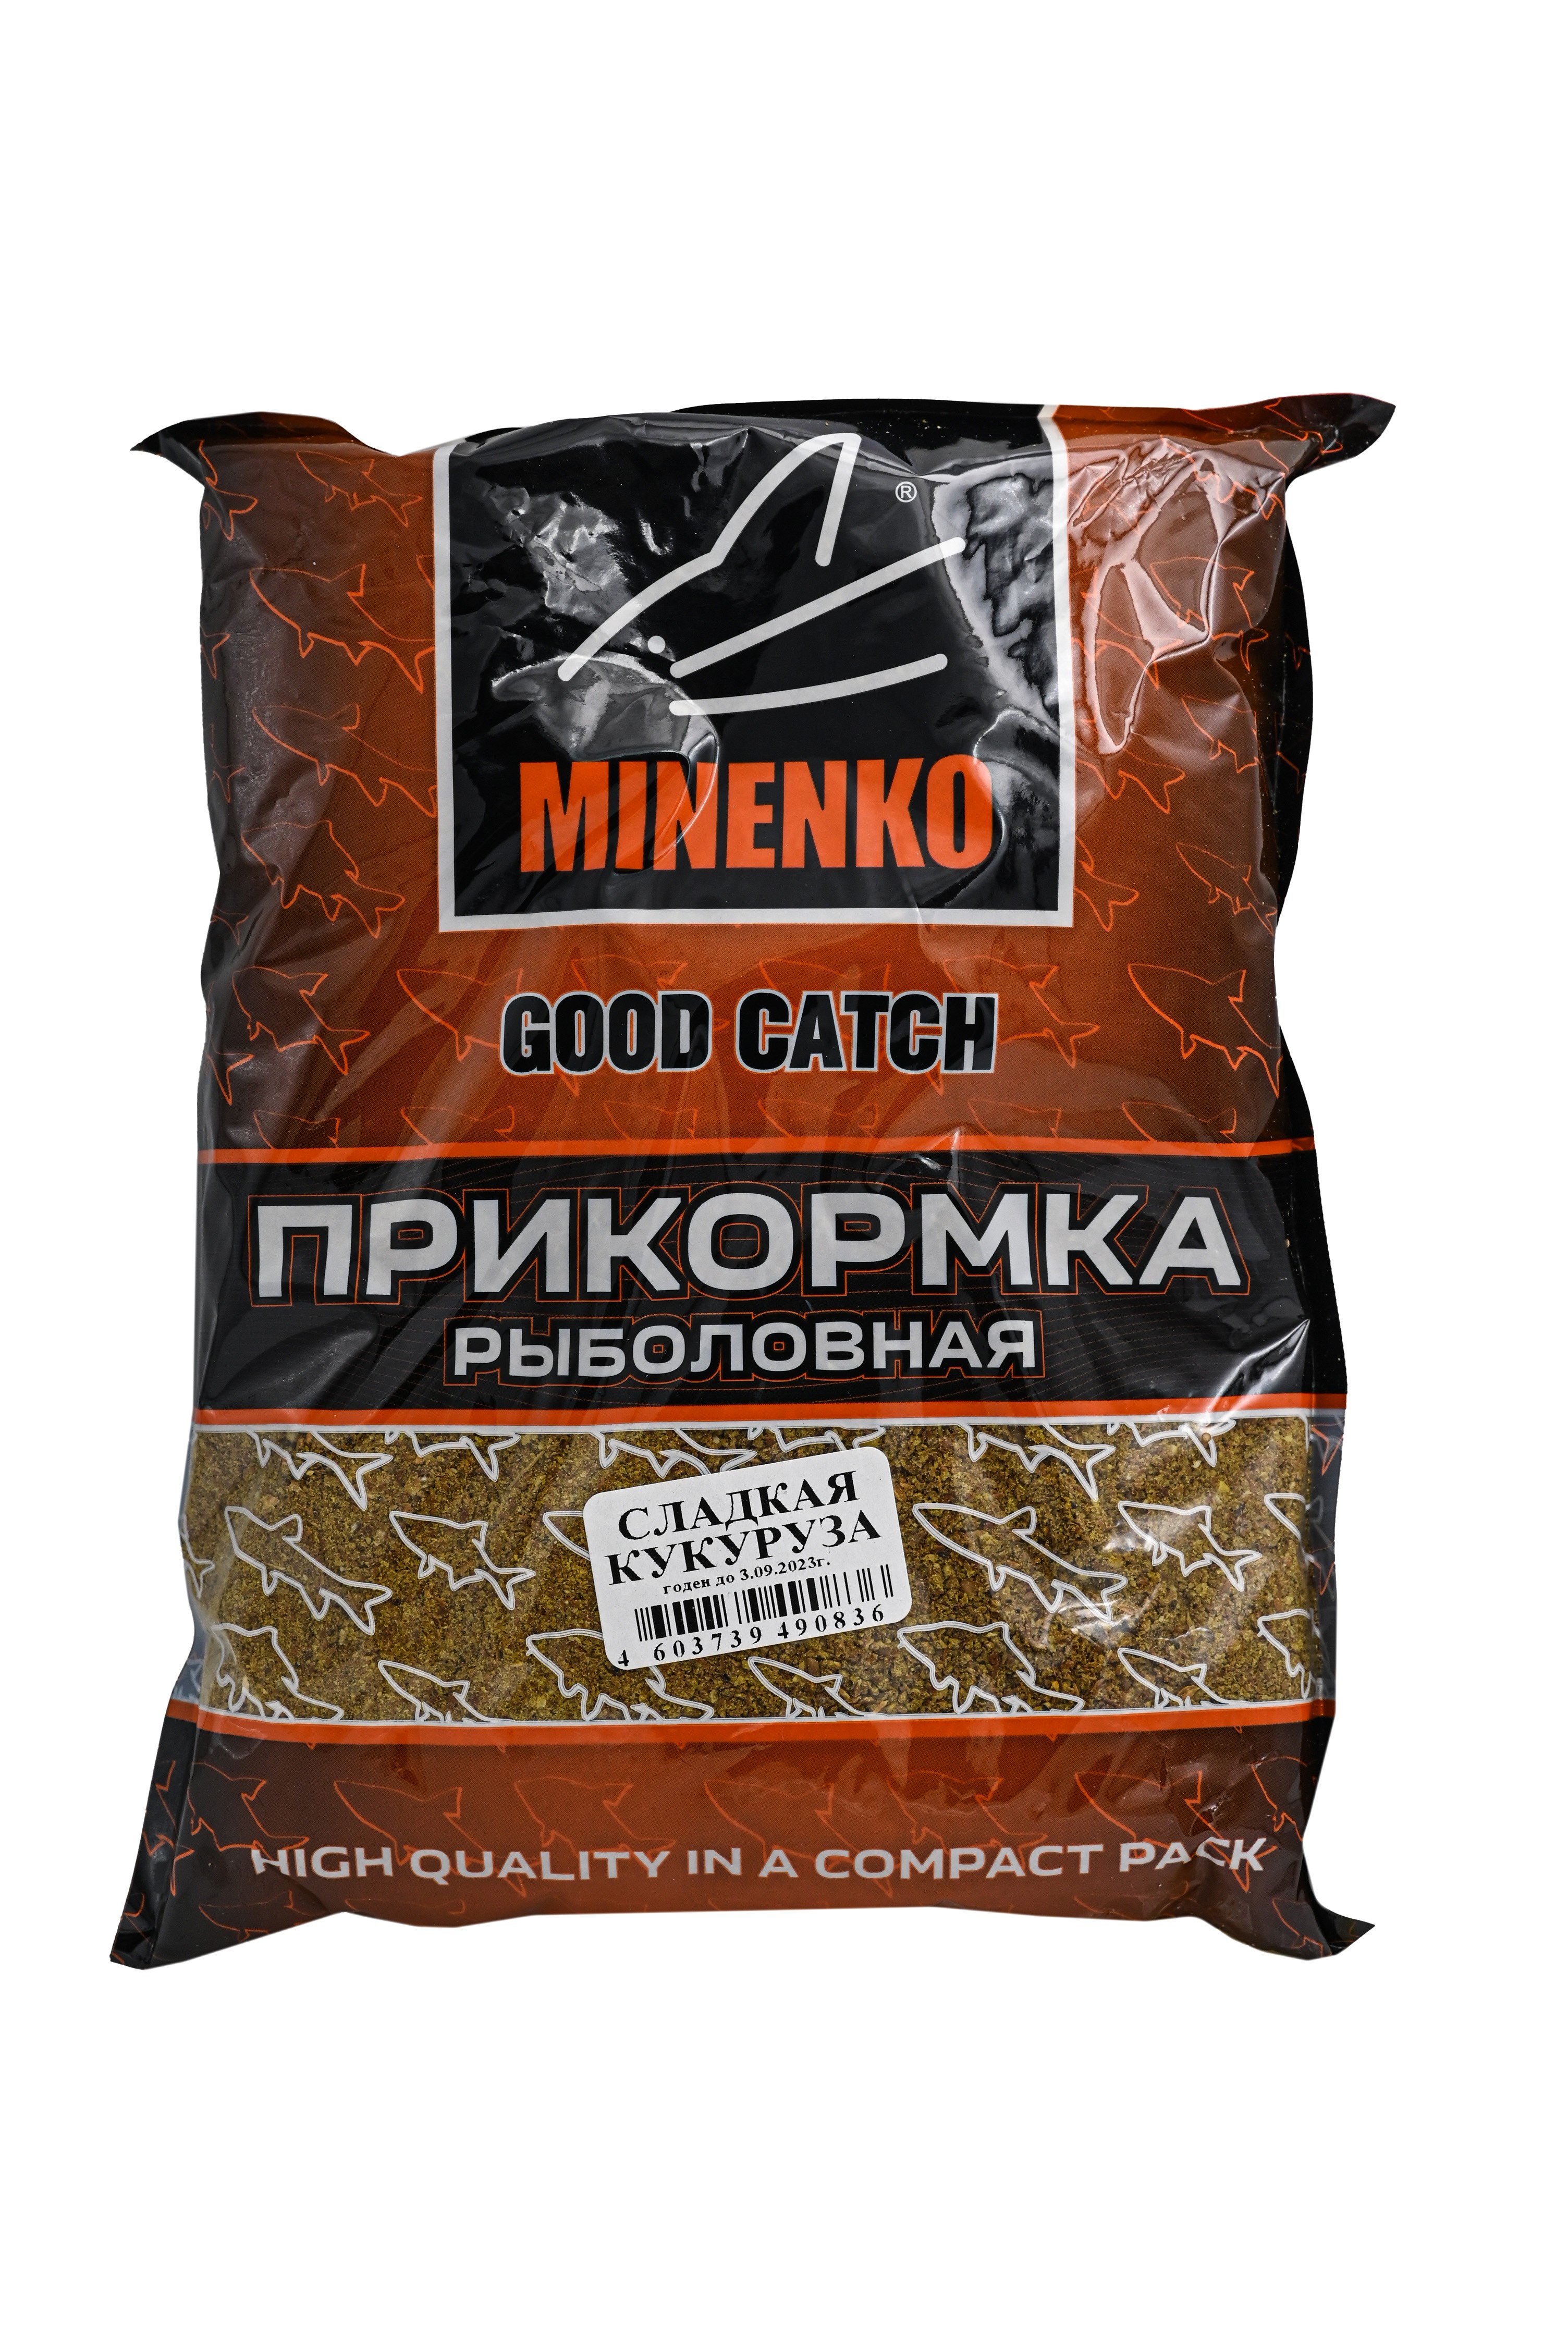 Прикормка MINENKO Good catch сладкая кукуруза 0,7кг